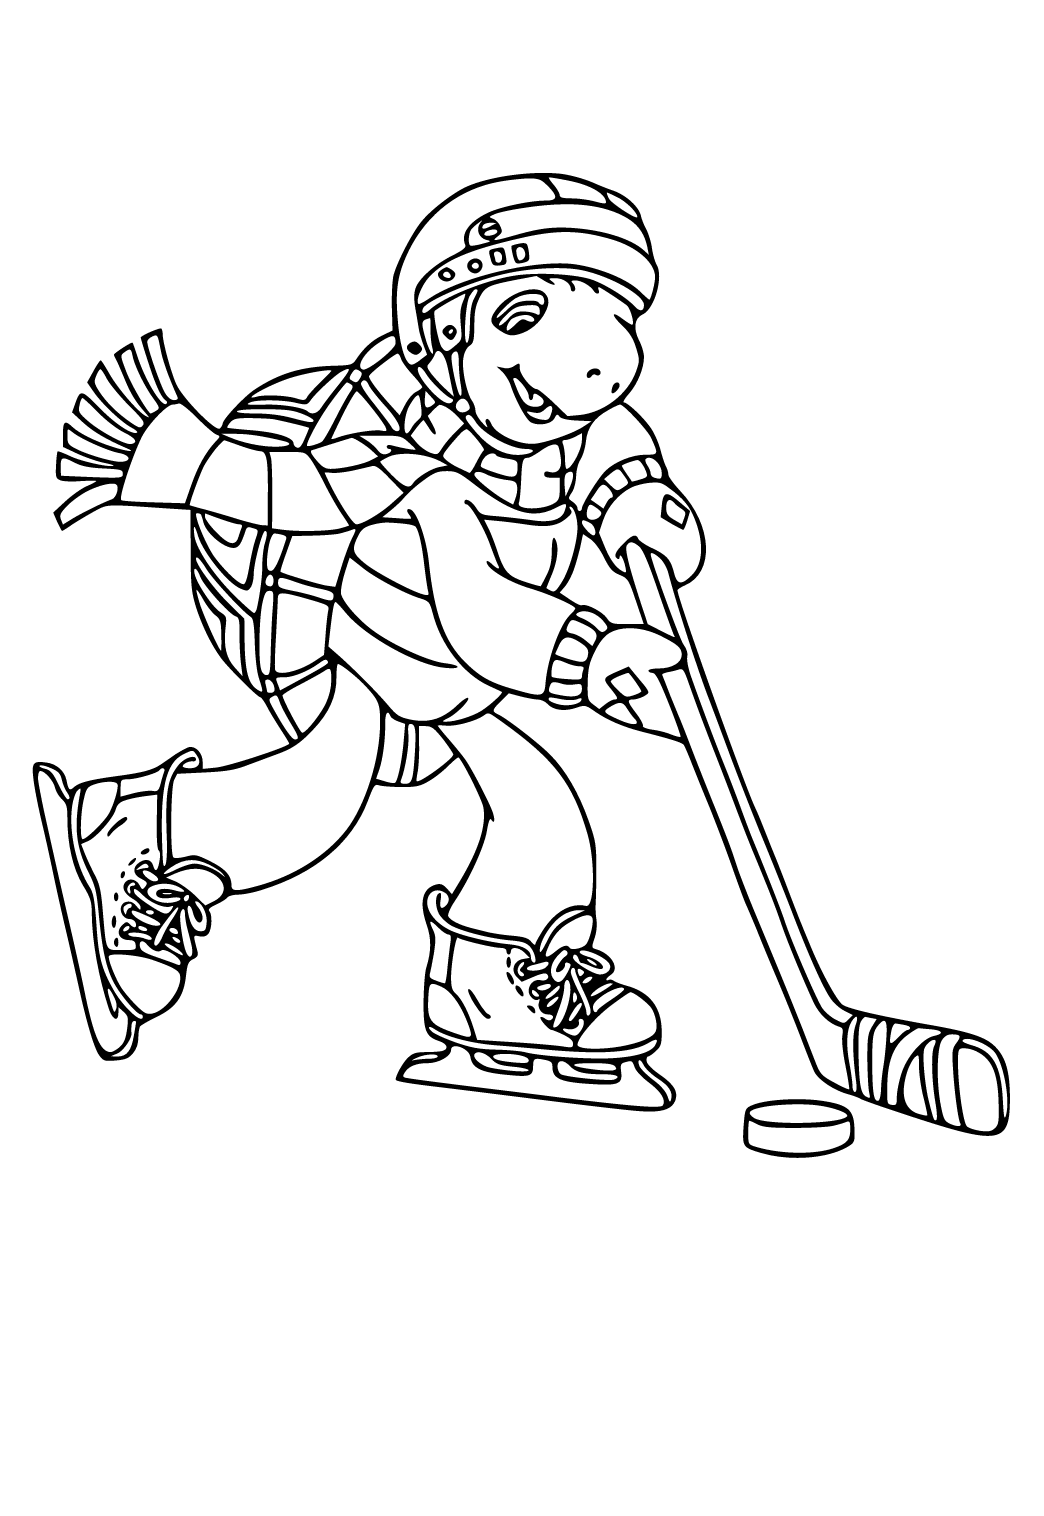 Хоккей - Распечатать раскраску для детей